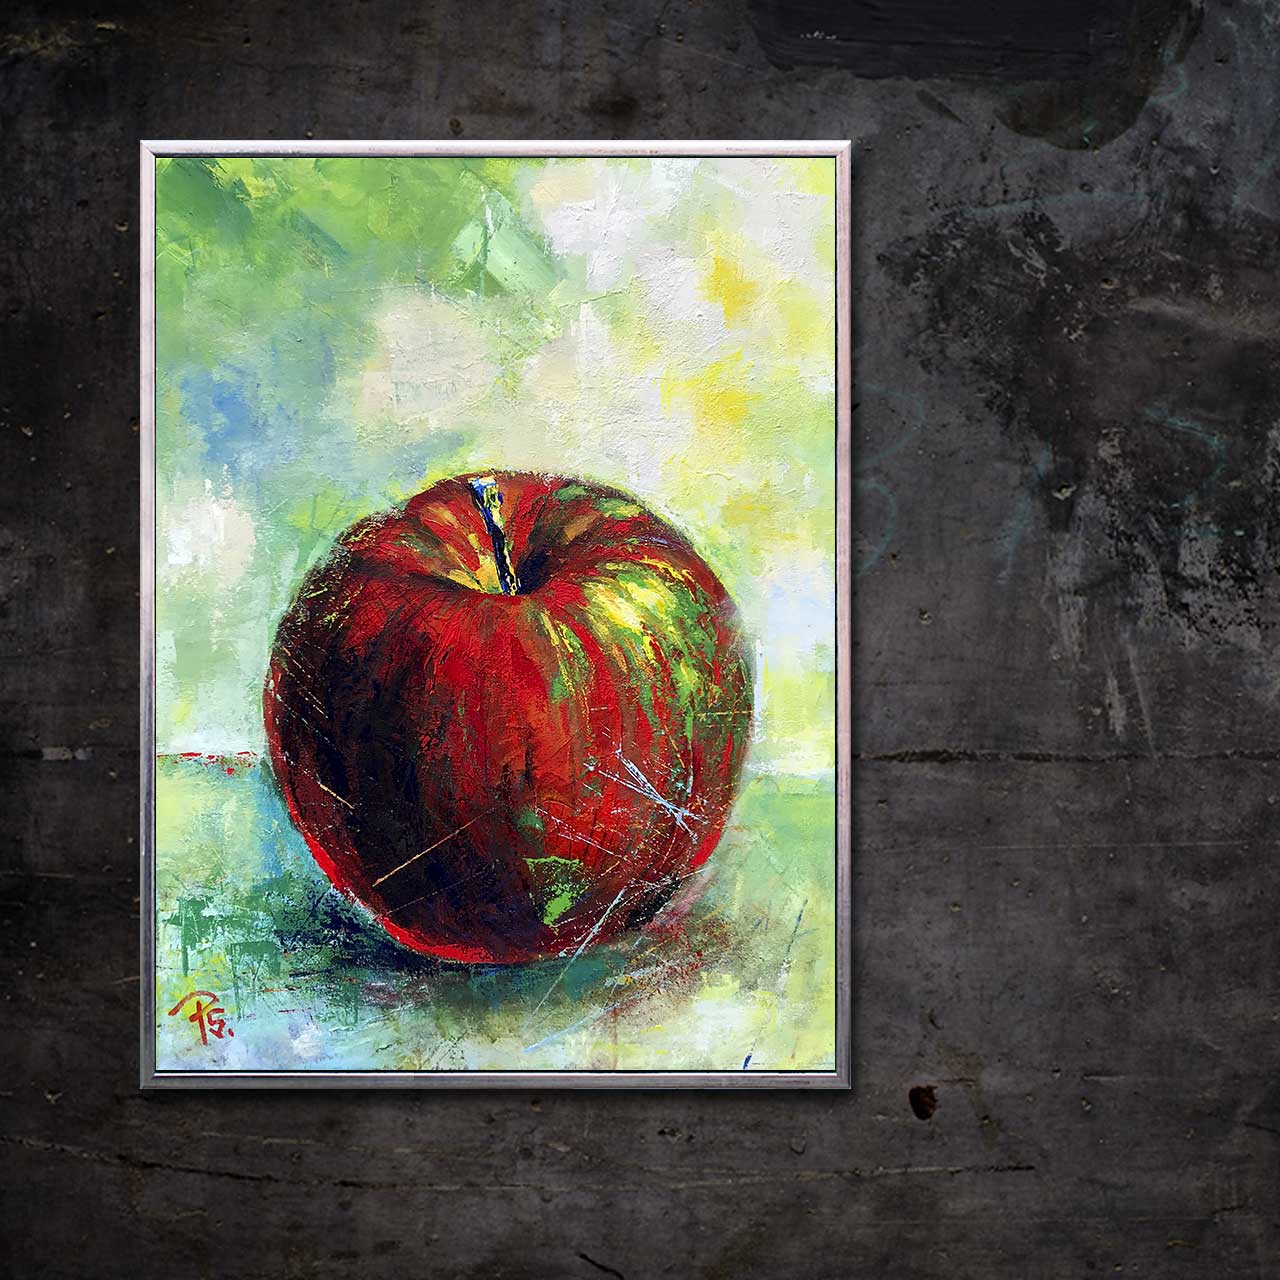 Rødt æble med blå stilk 01 - malet af Peter Simonsen. Akryl og pastel på lærred. Format: 60 x 80 cm